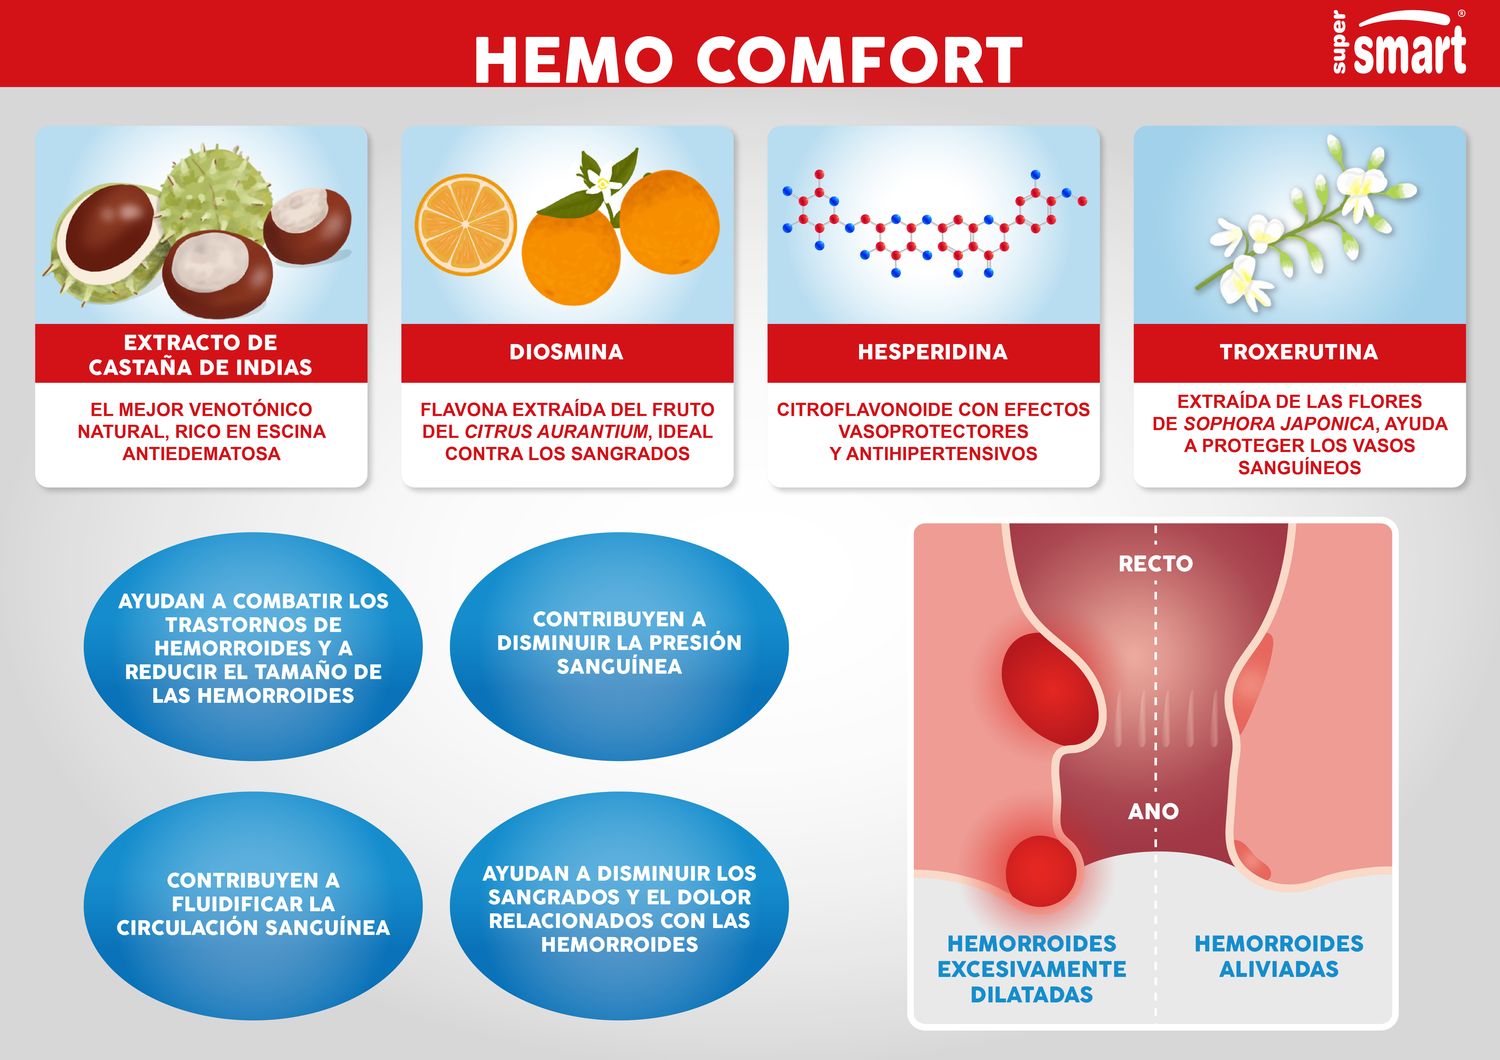 Los beneficios de Hemo Comfort